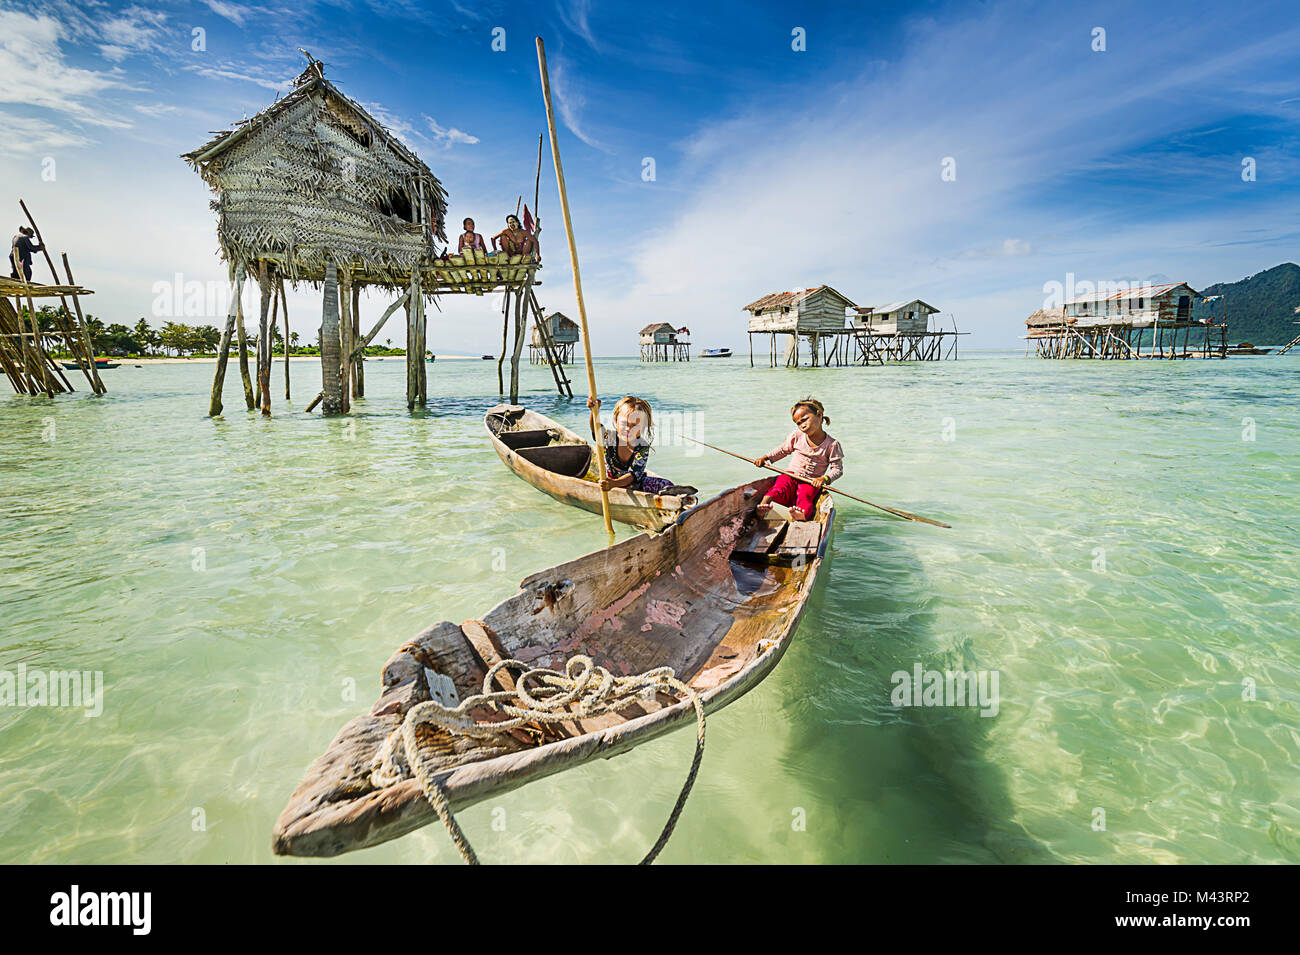 Die bajau Laut werden als von ea in der Zigeuner" aufgrund ihrer nomadischen, Seefahrt Lebensweise bekannt. Stockfoto